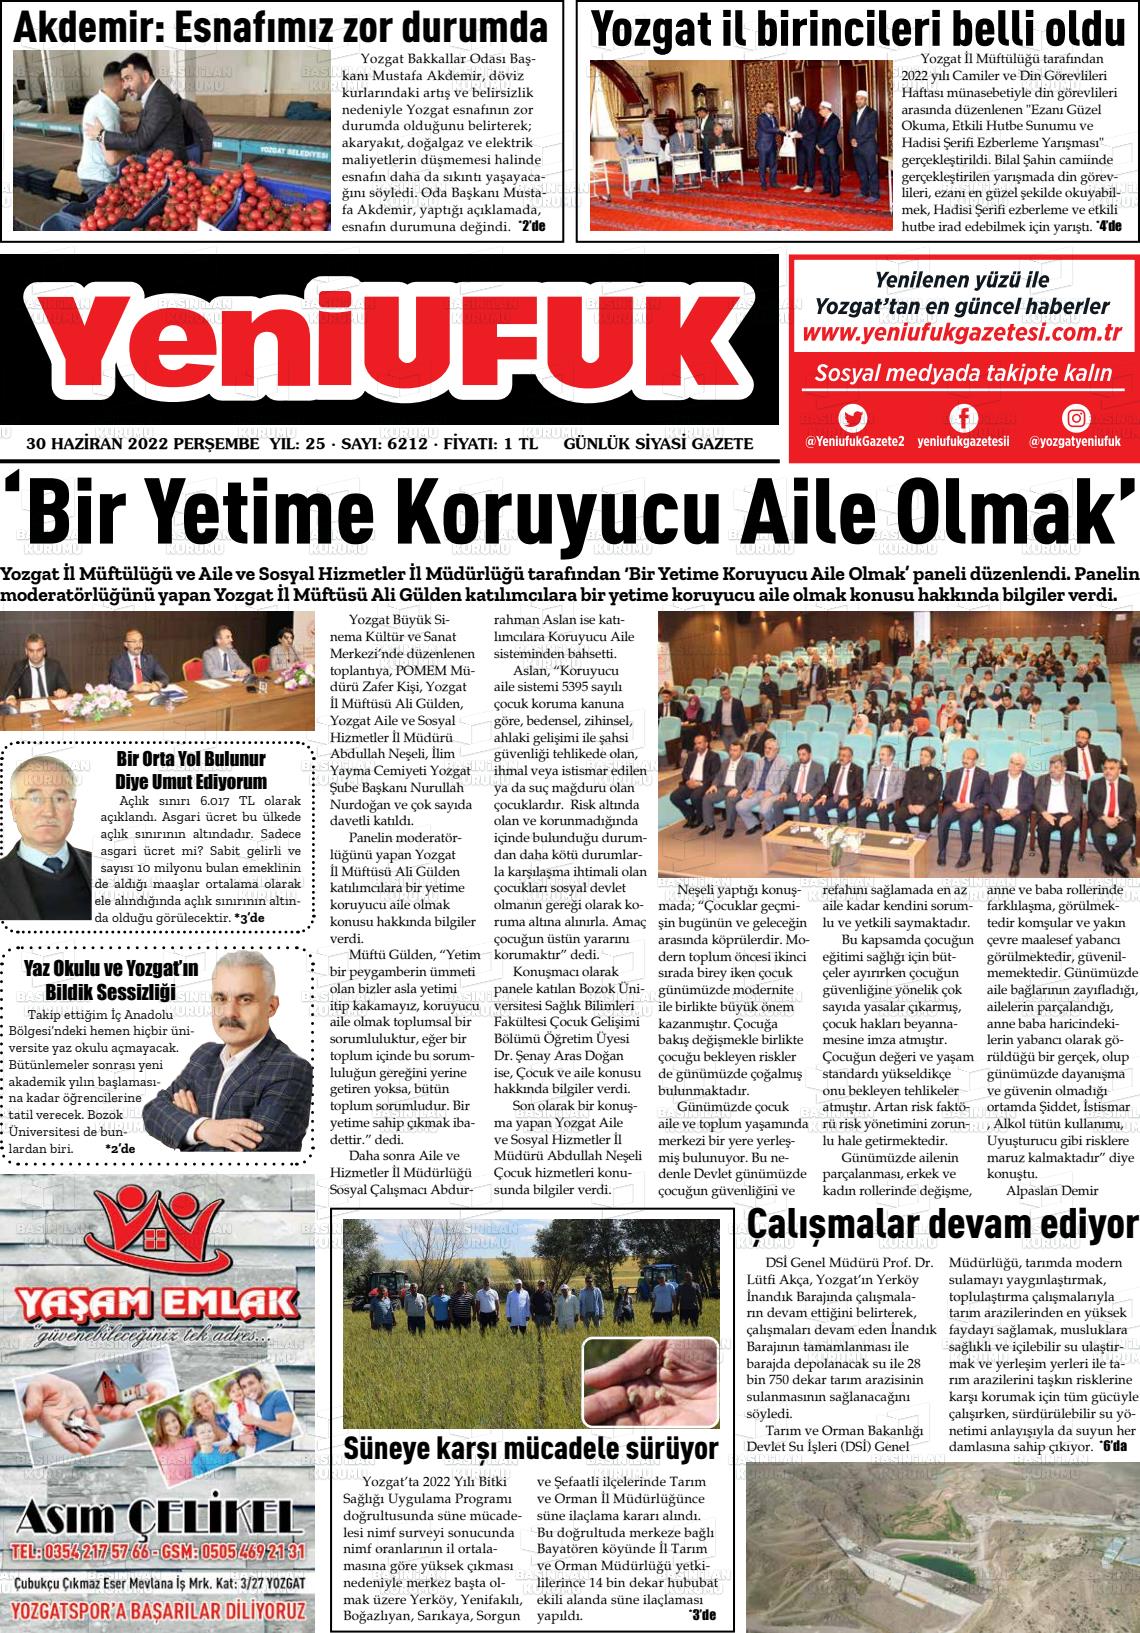 02 Temmuz 2022 Yozgat Yeni Ufuk Gazete Manşeti